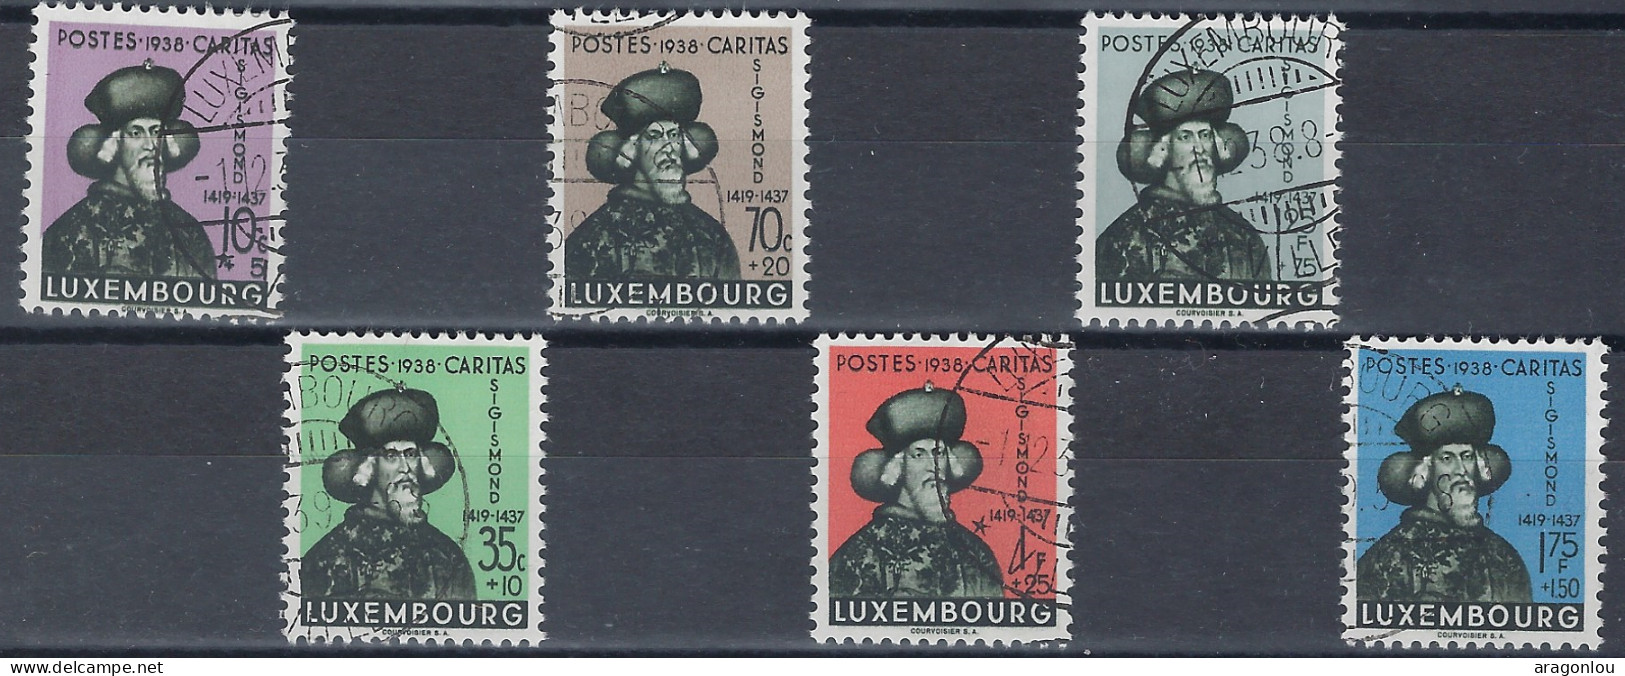 Luxembourg - Luxemburrg - Timbres  1938   Sigismund   Série   ° - Oblitérés